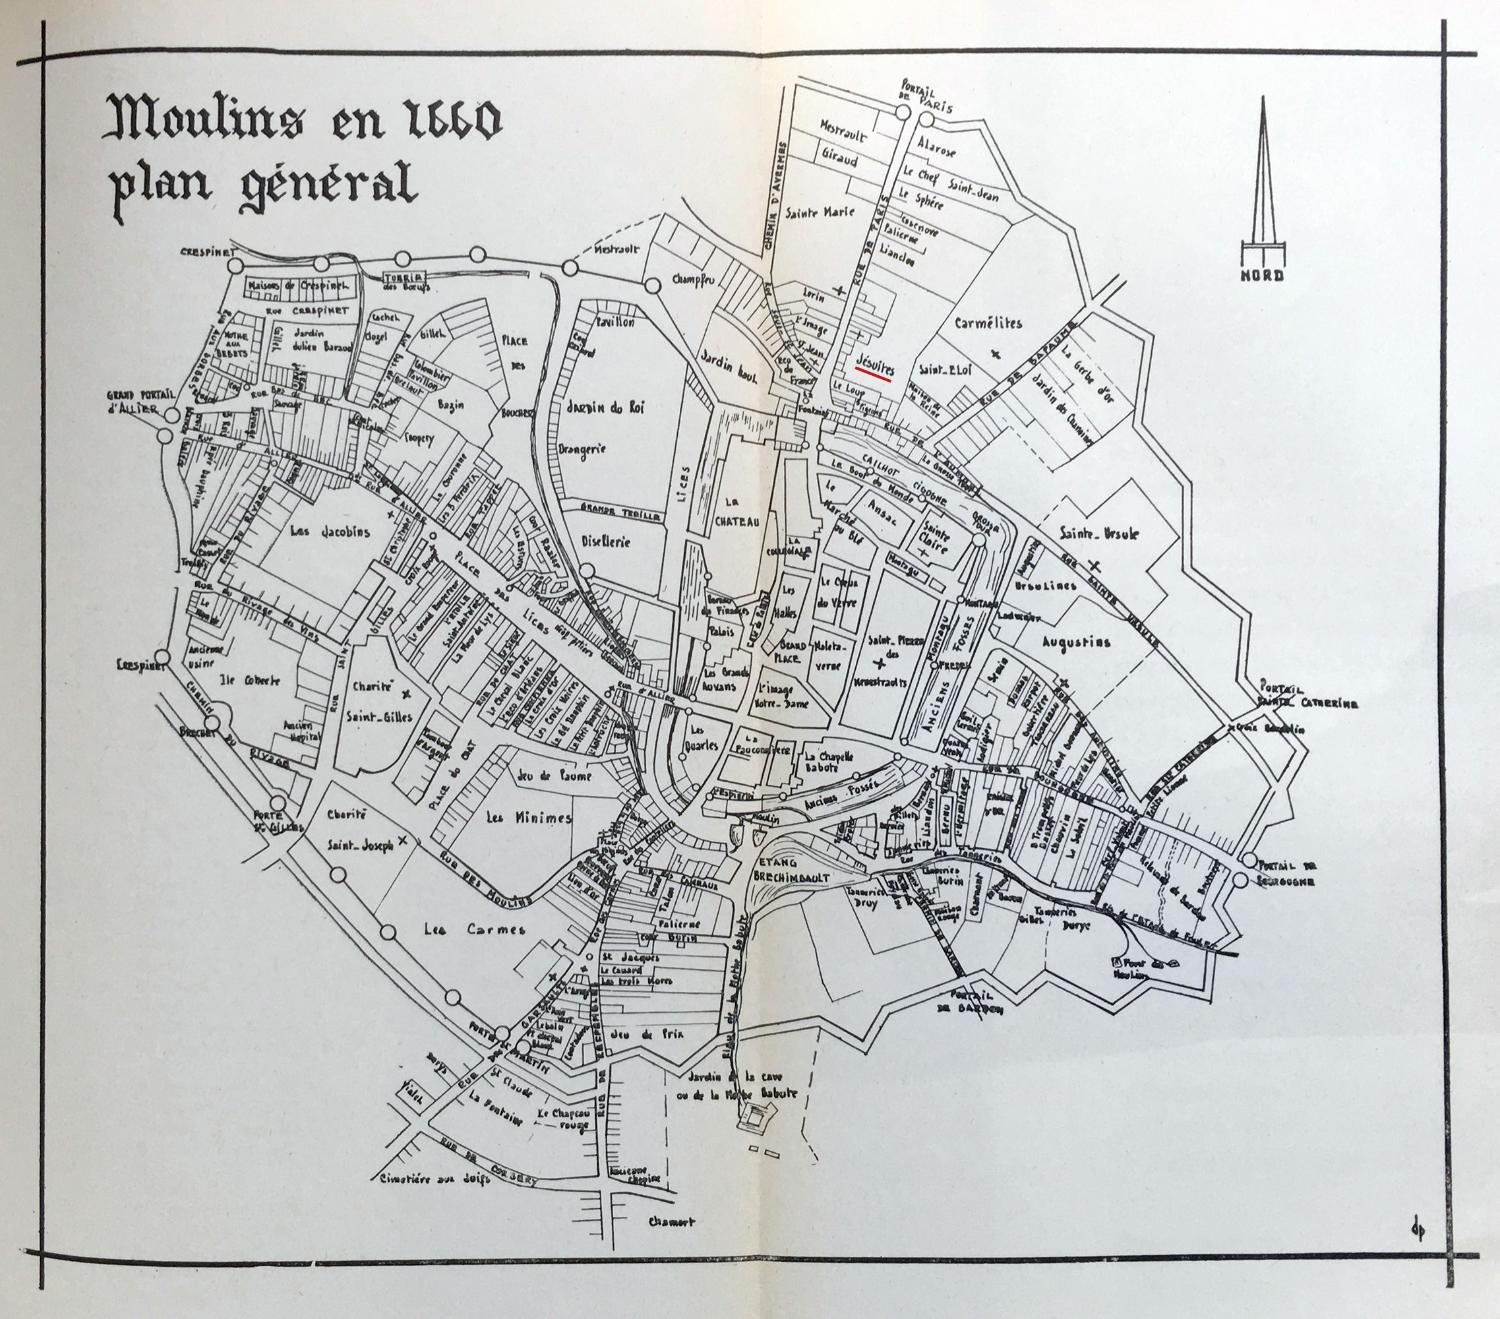 Plan de Moulins et ses faubourgs en 1660 ; souligné en rouge : le collège des jésuites (dess. in M. Litaudon, 1962, p. 311)